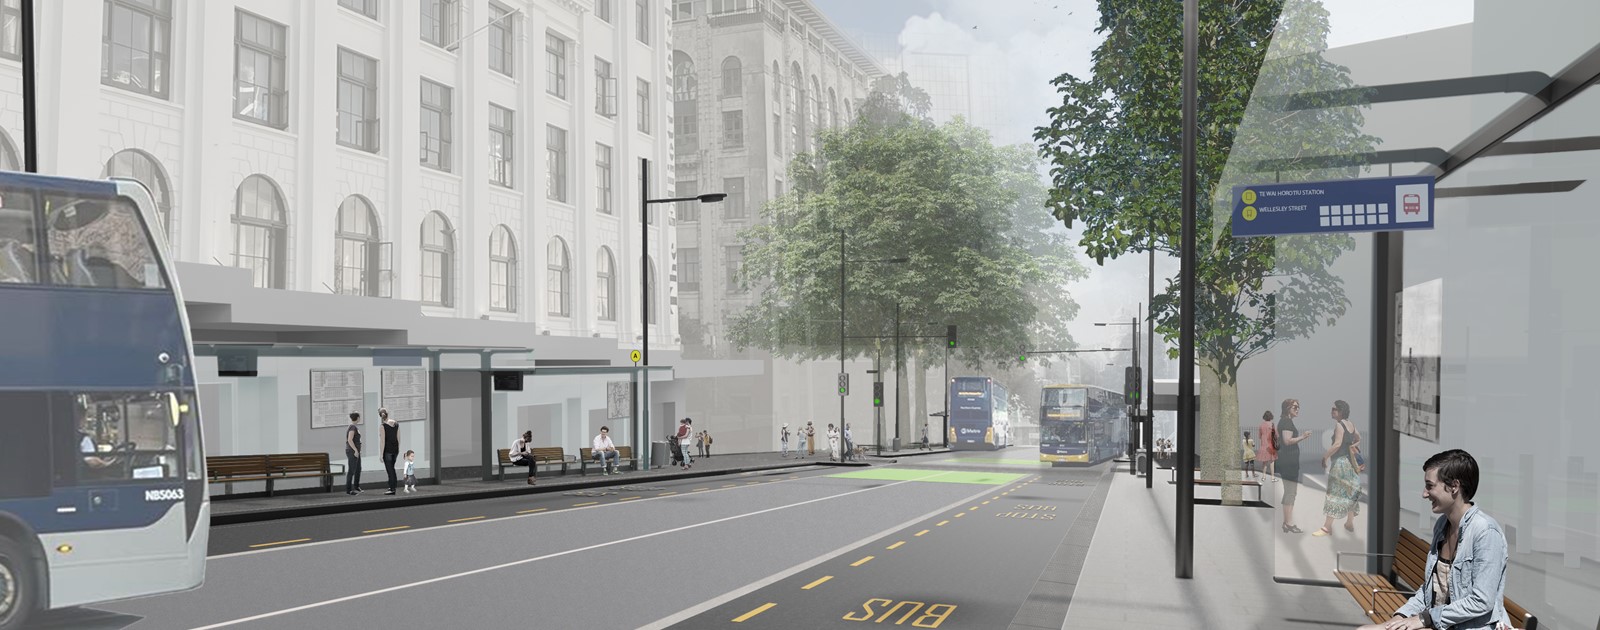 Wellesley Street bus interchange render 